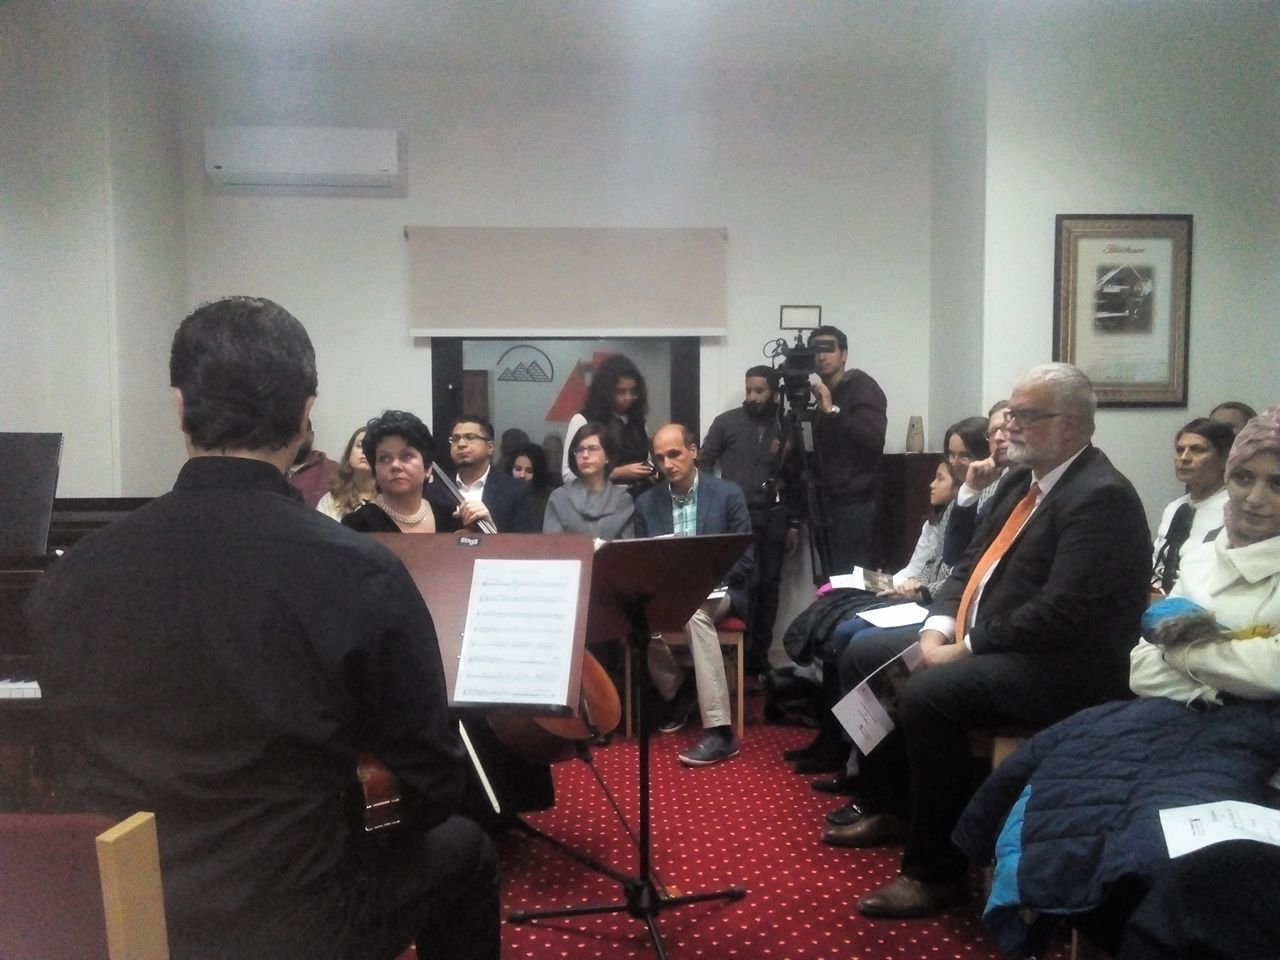   صور| افتتاح أول مدرسة موسيقية ألمانية بالقاهرة